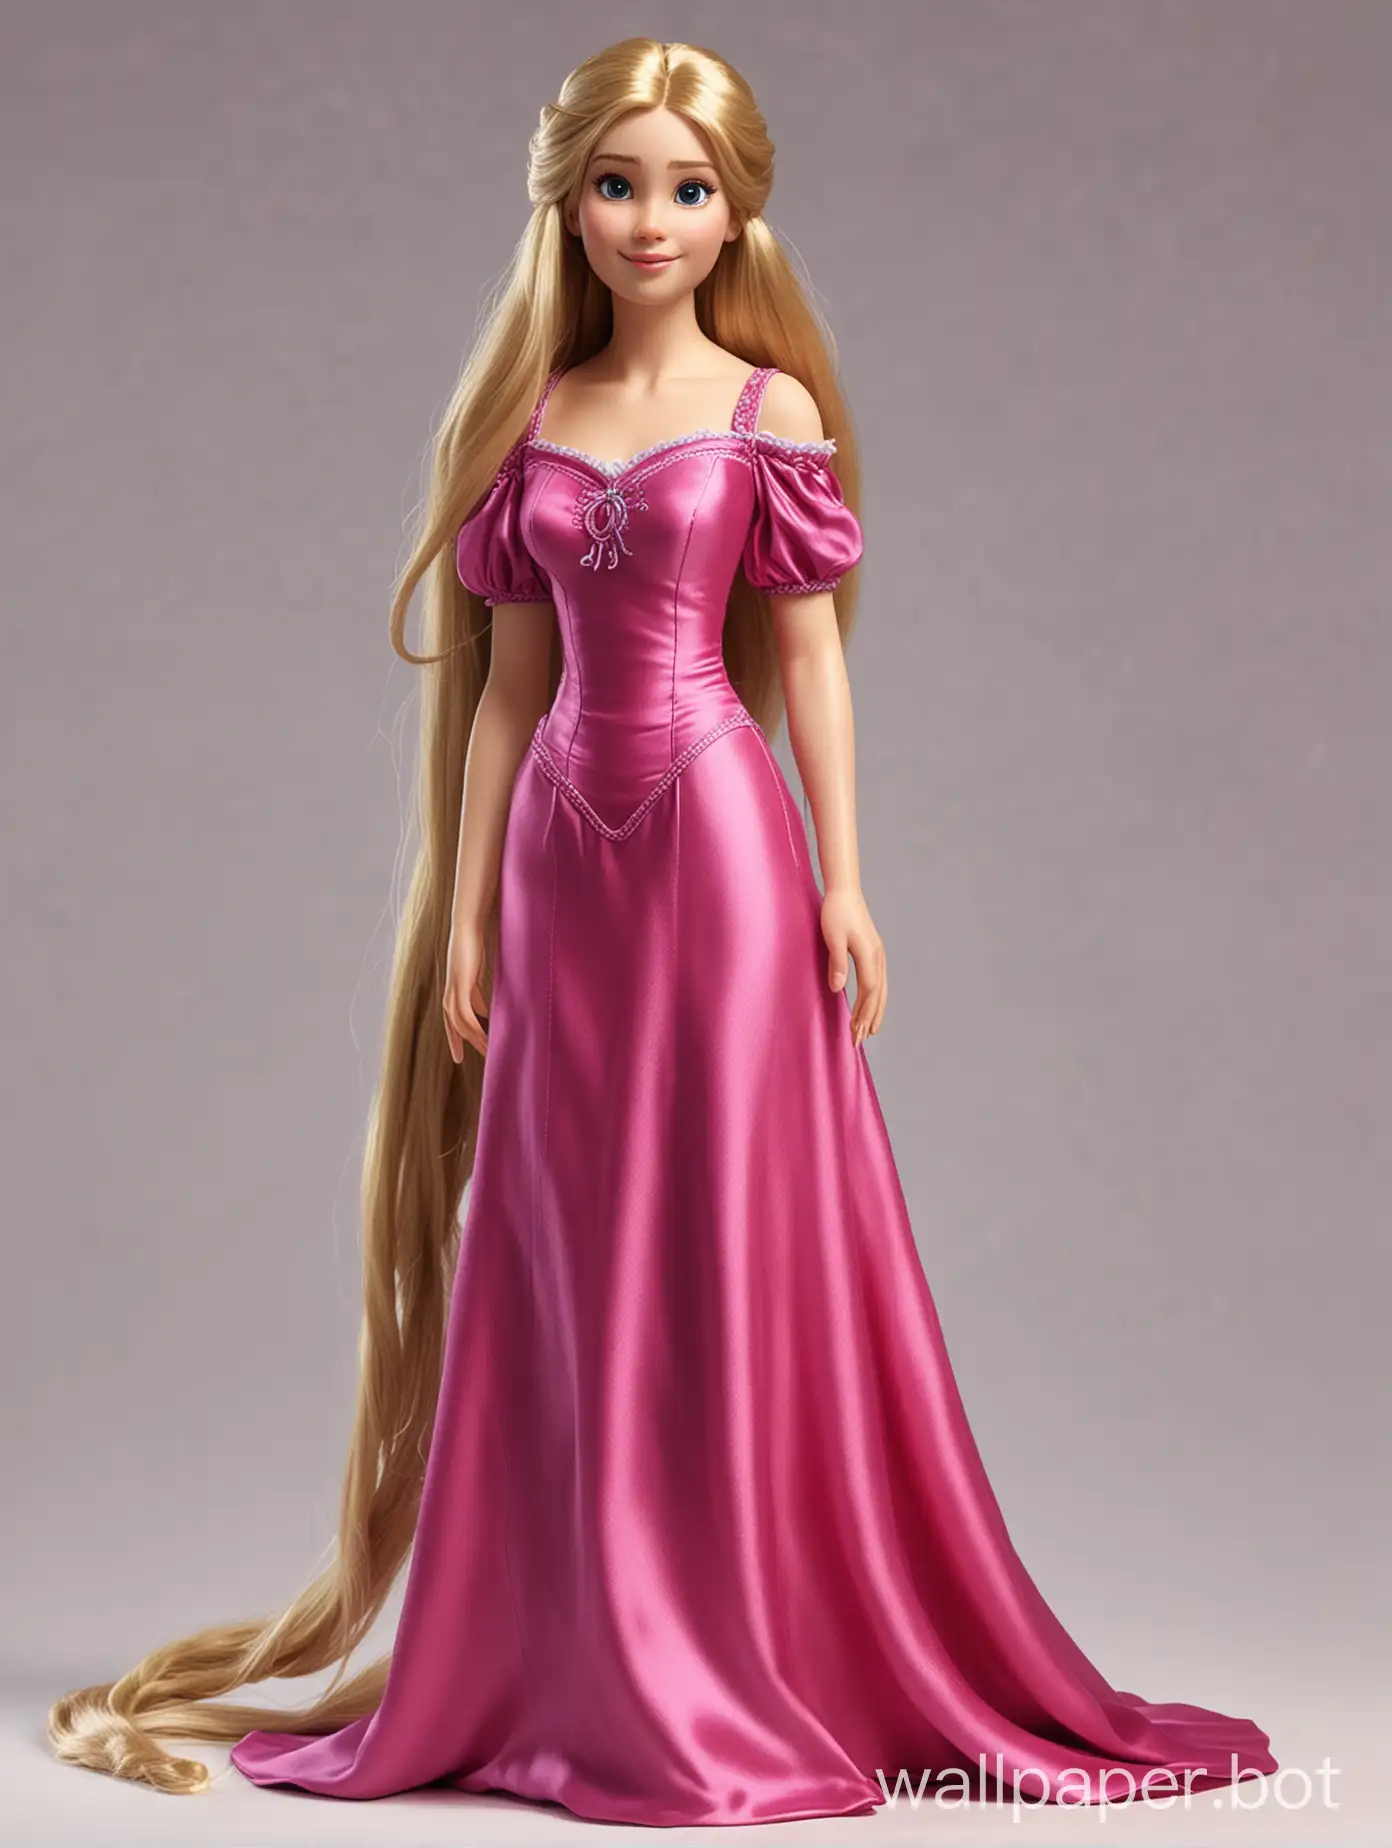 Реалистичная Рапунцель с длинными волосами в шелковом платье-слип цвета розовая фуксия